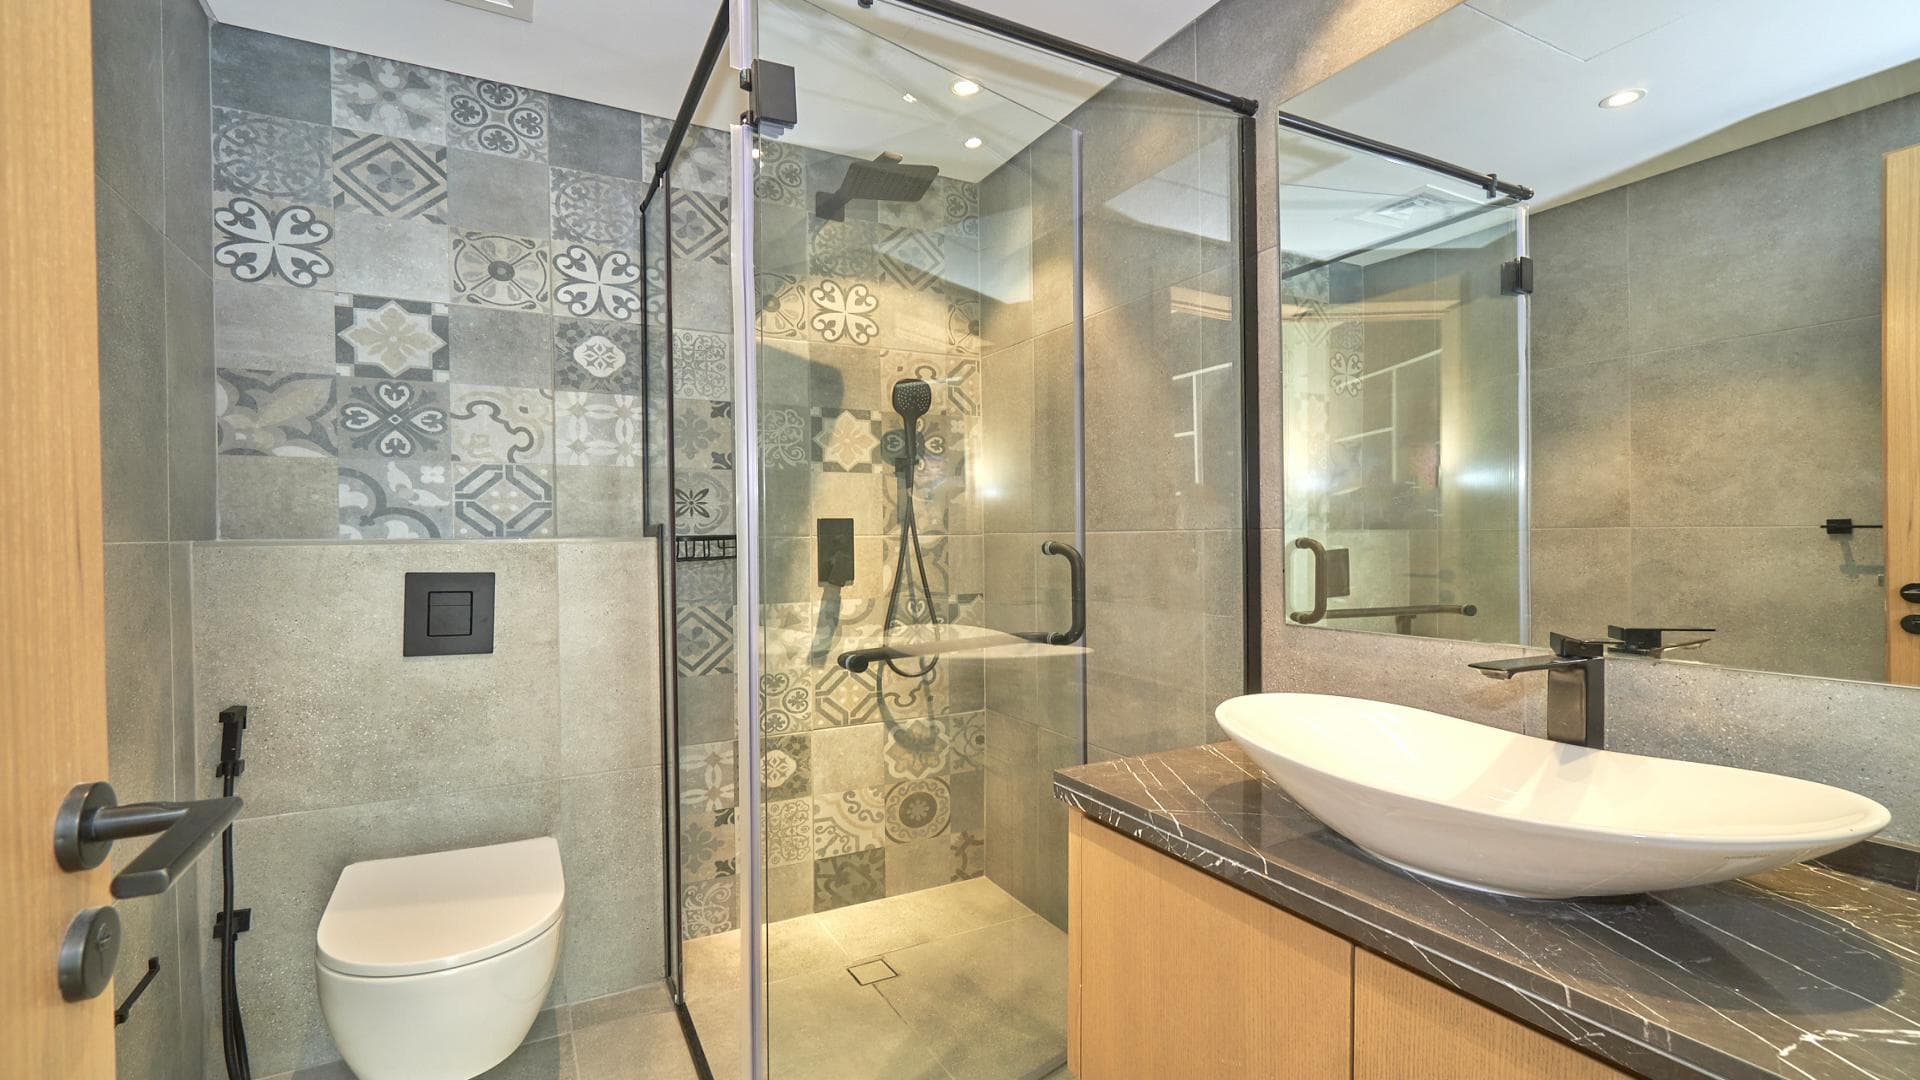 4 Bedroom Villa For Rent Jumeirah Luxury Lp17960 F65f12bcc908680.jpg